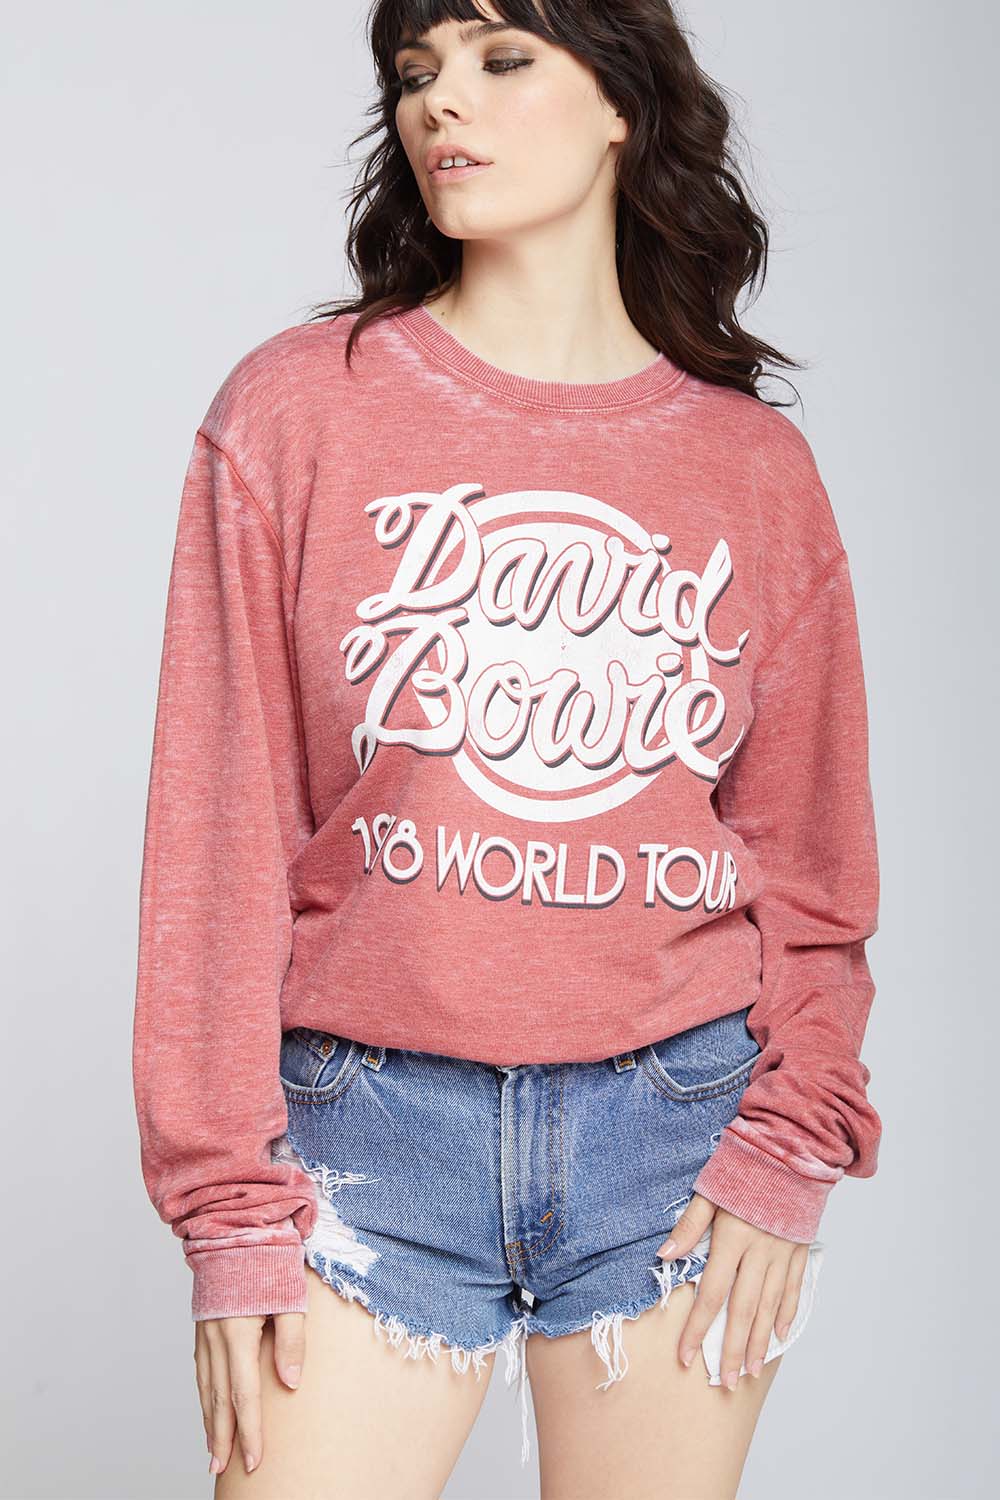 Bowie World Tour Sweatshirt